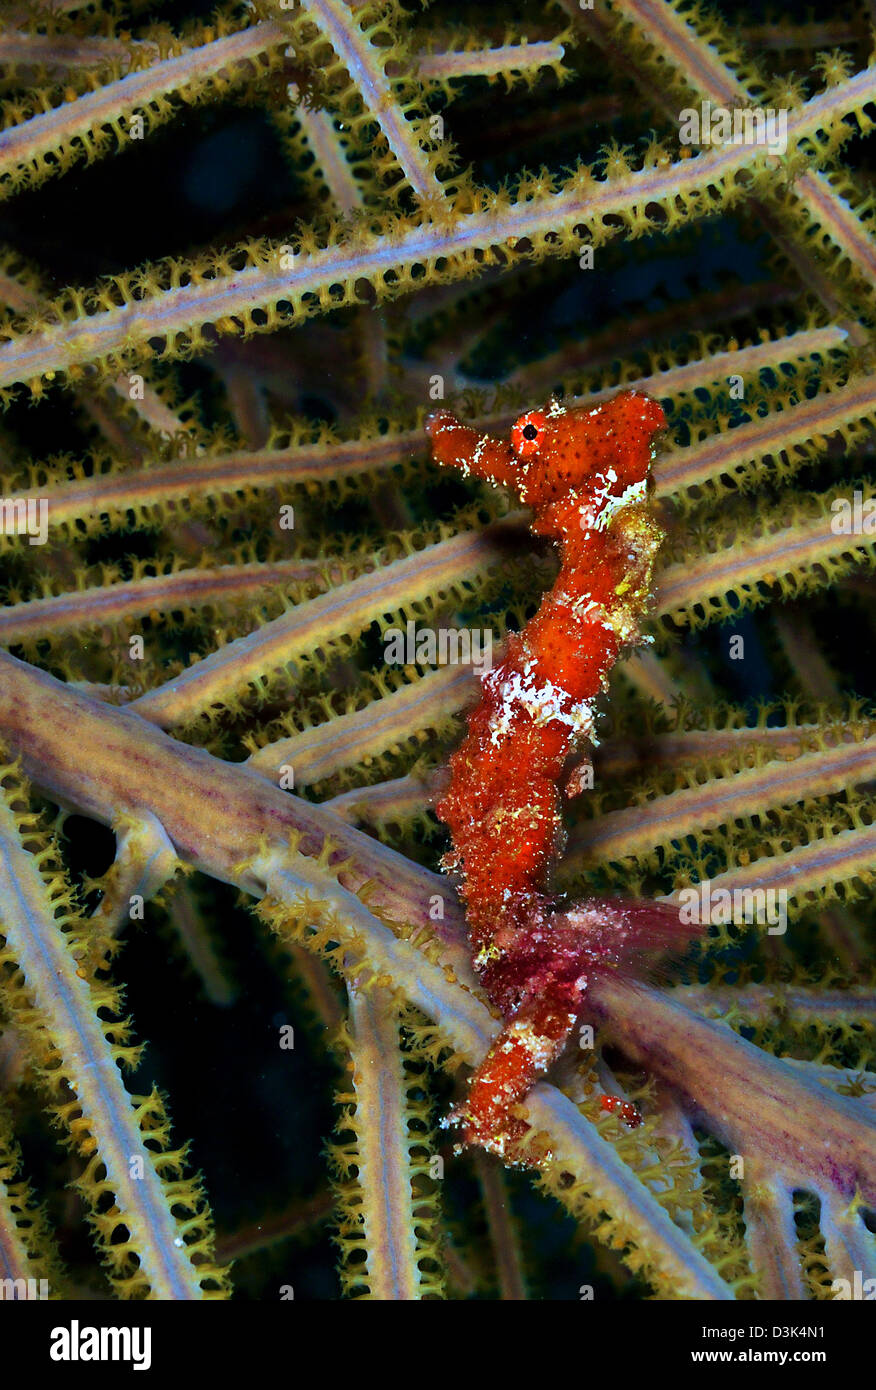 Red Seahorse am karibischen Reef. Stockfoto